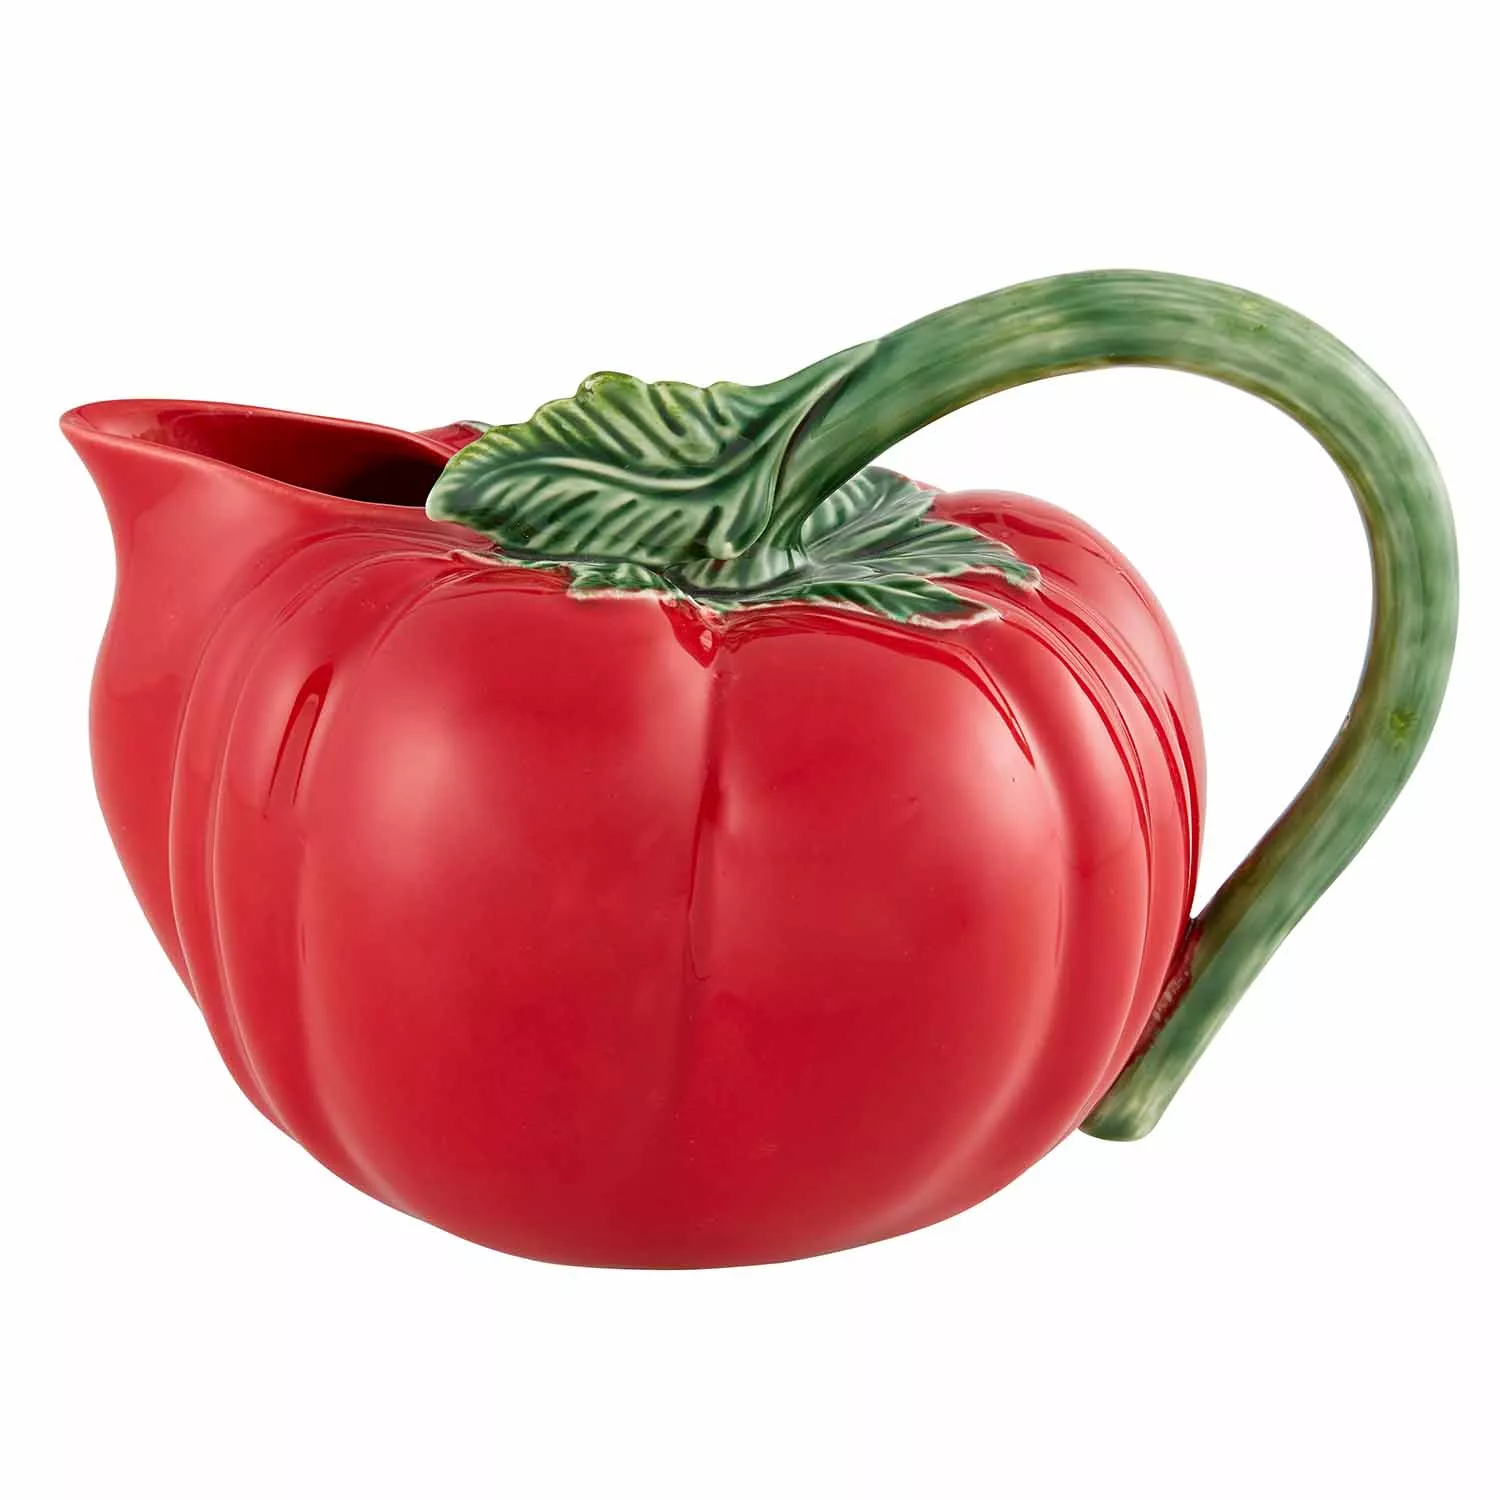 Bordallo Pinheiro Peixes glazed pitcher - Red